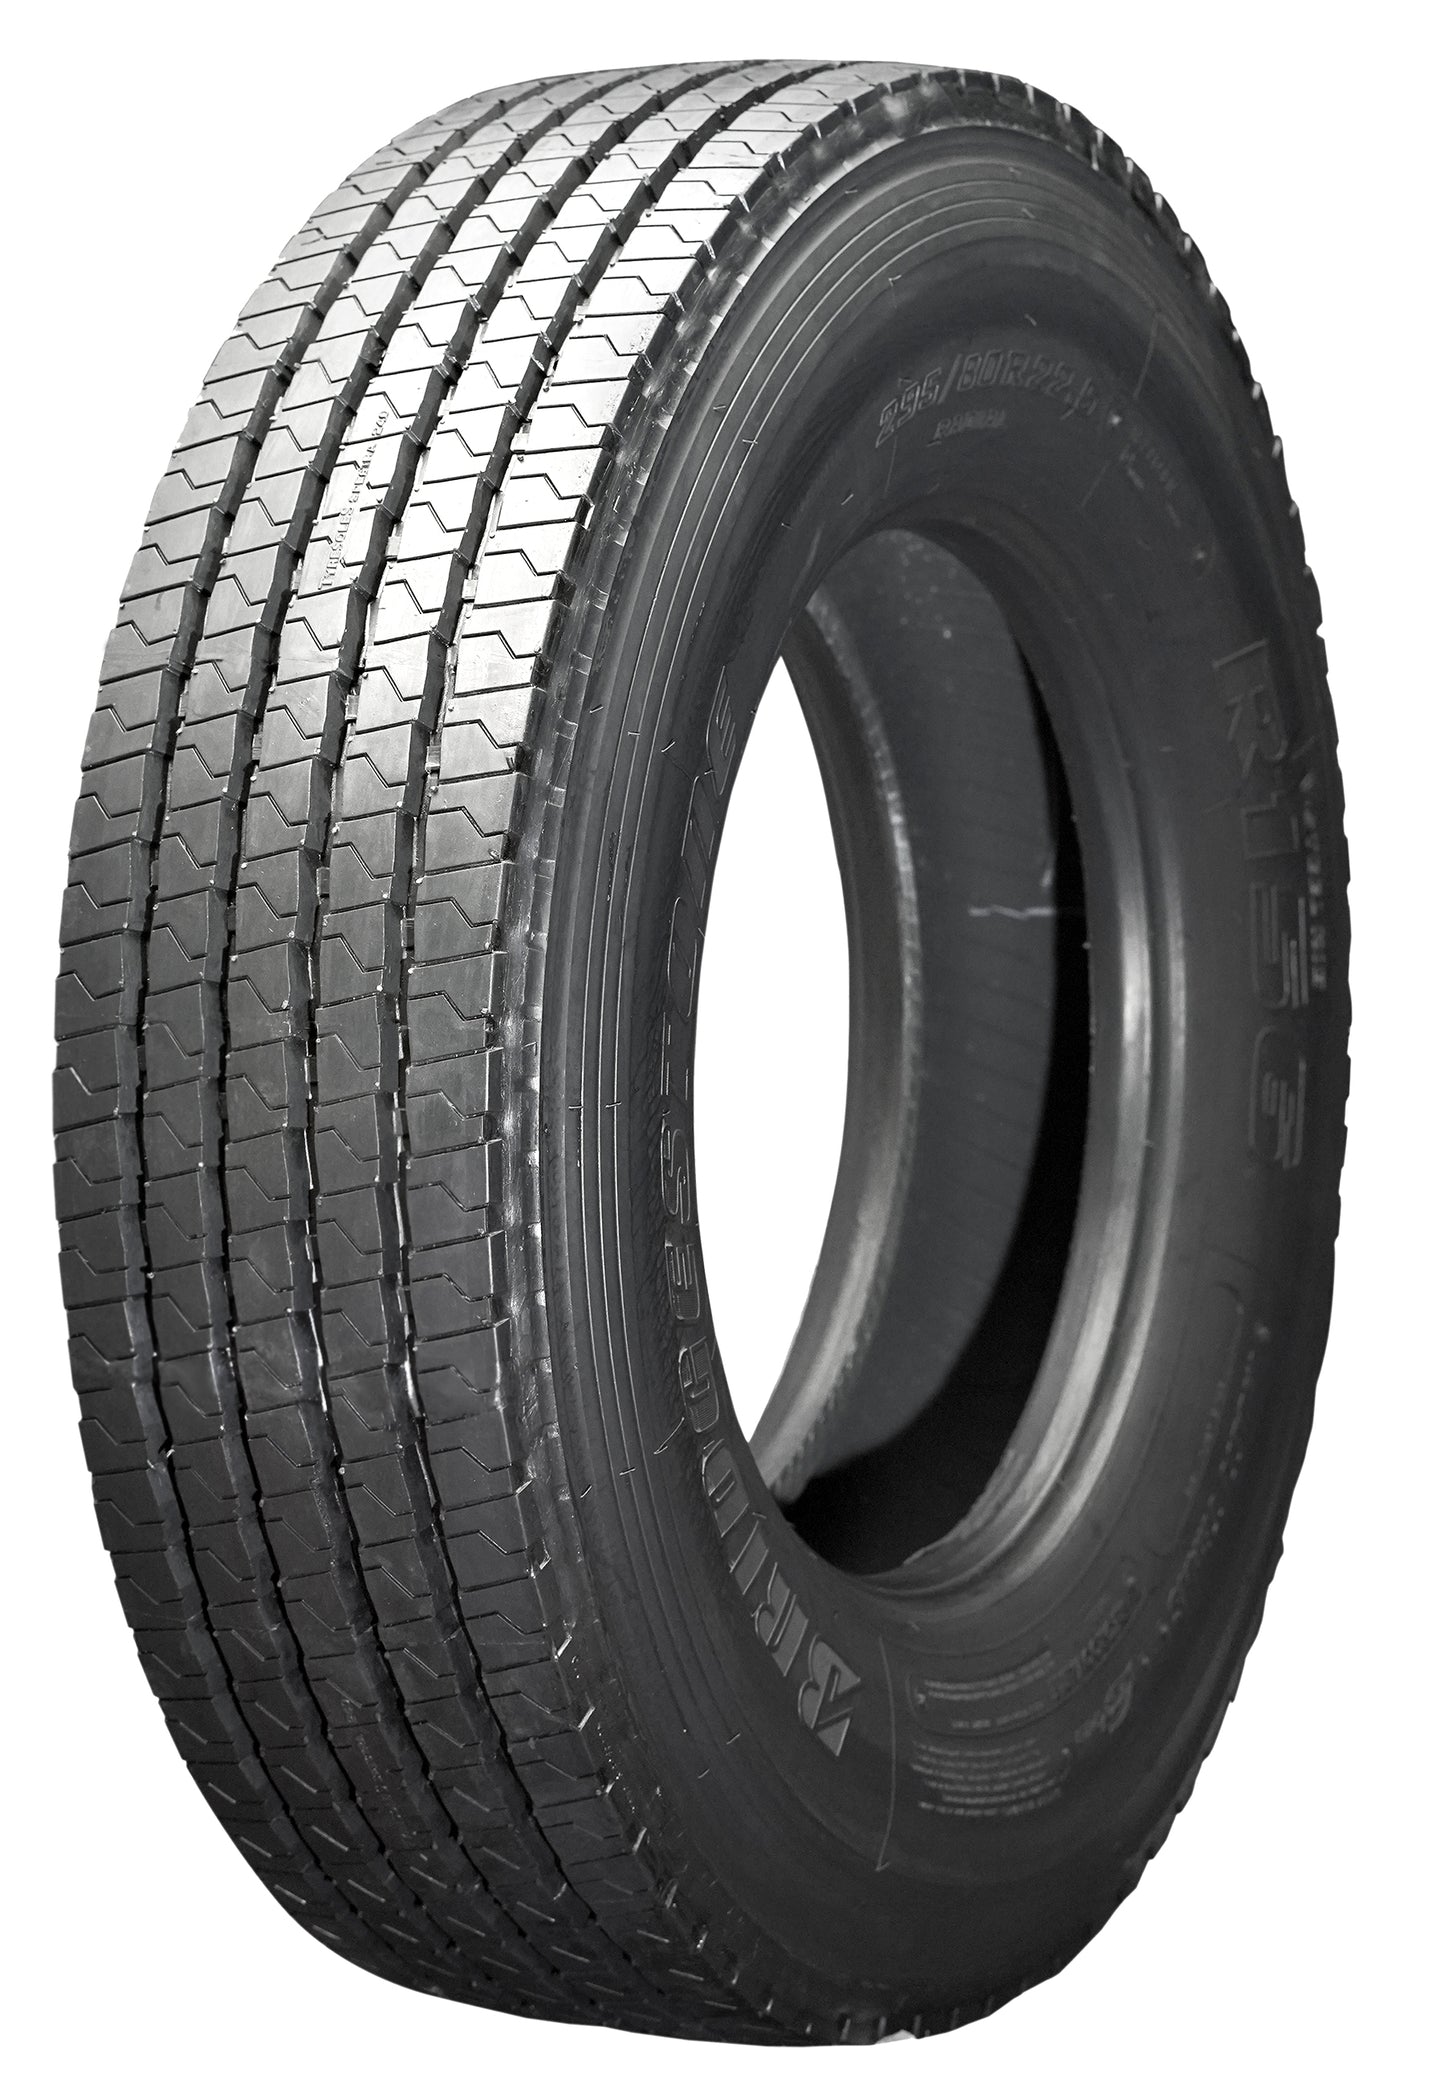 Tyresoles Ecomiles Certified Retreaded Truck Tyres 8.25R20